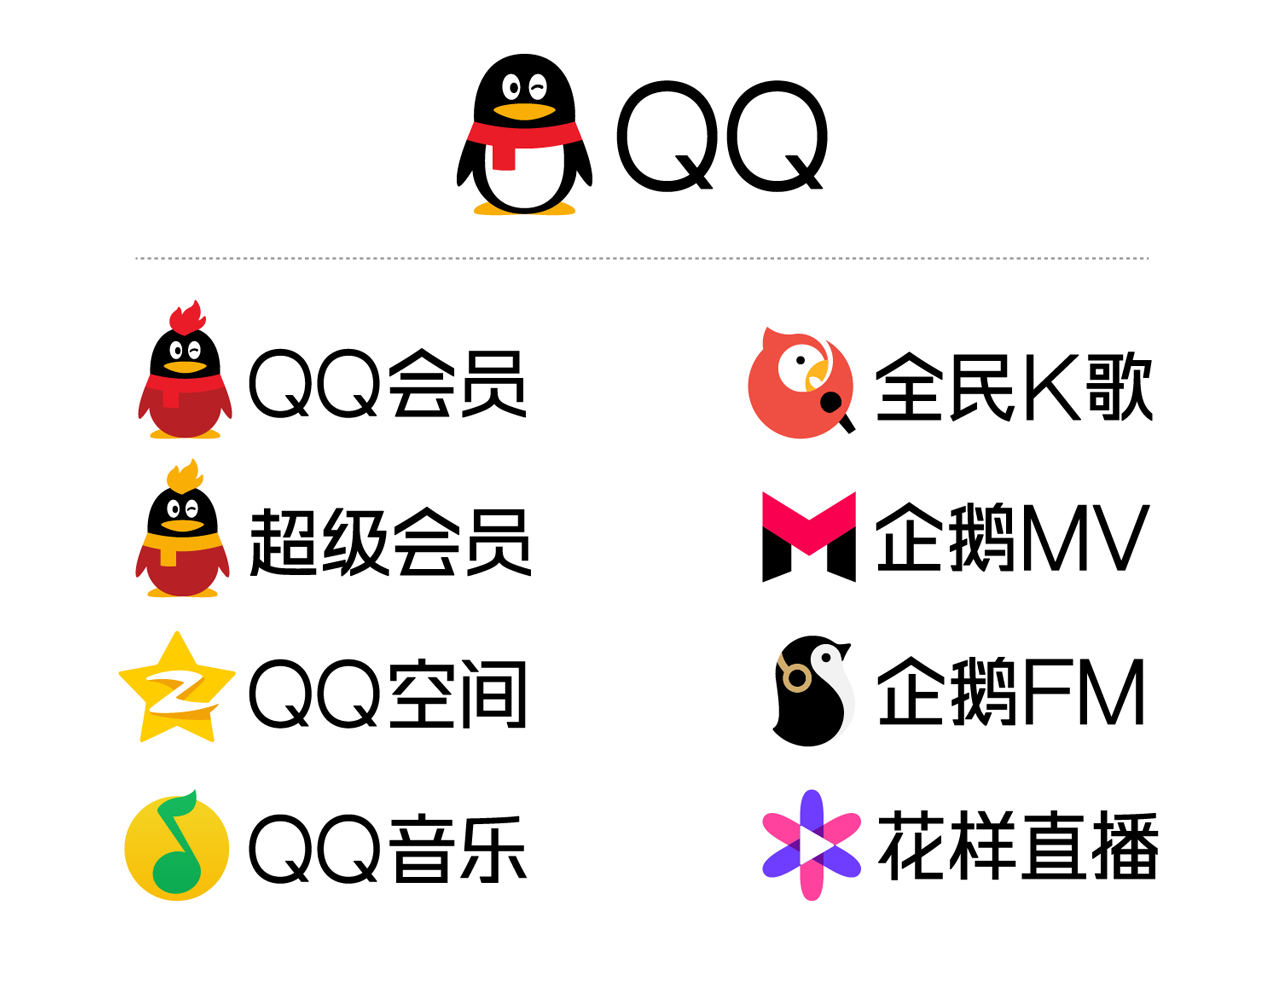 【1999-2016】QQ品牌蜕变